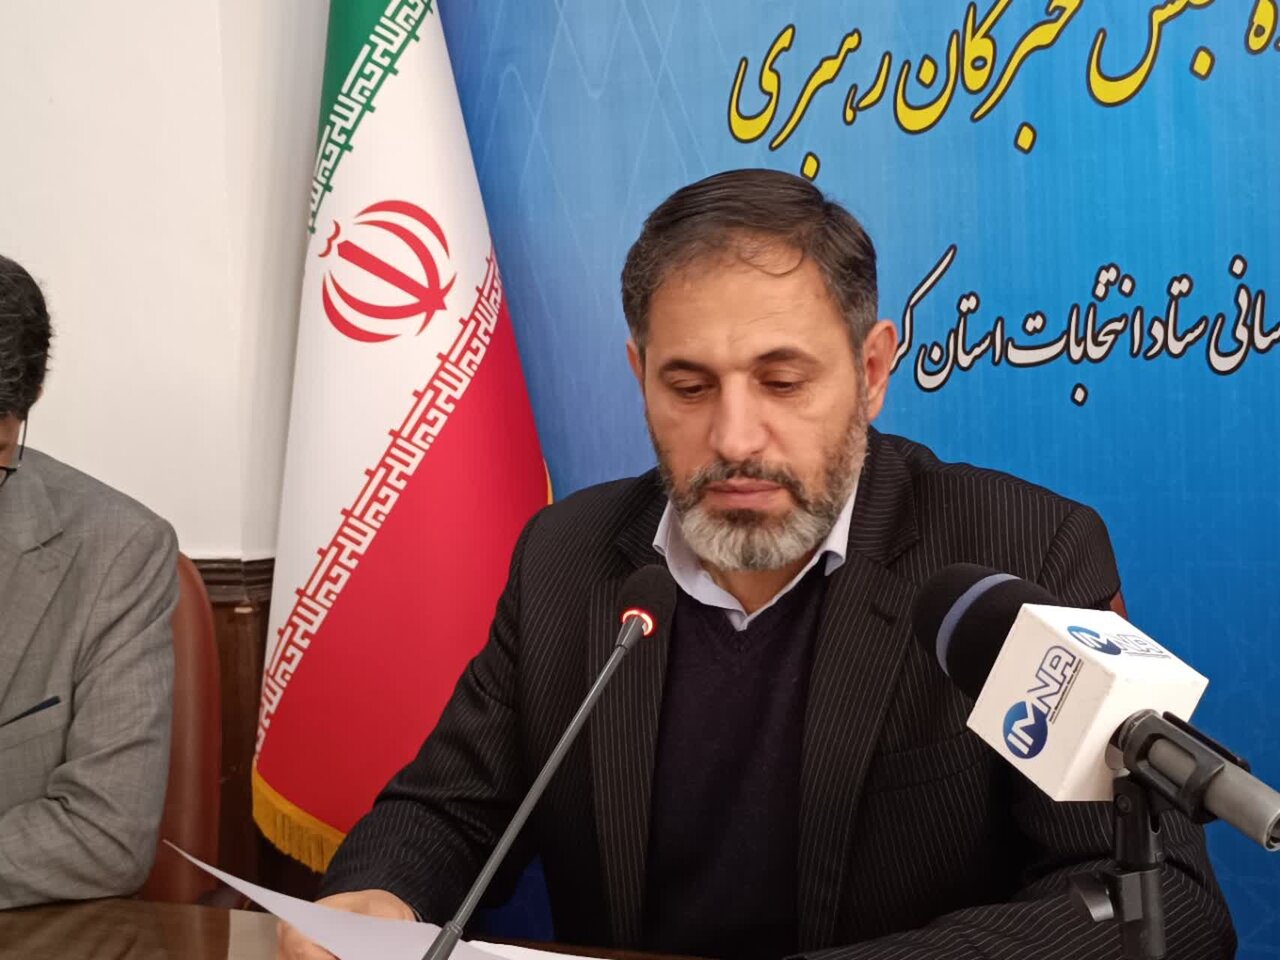 ۳۲ هزار نفر اجرای انتخابات را در ۱۶۷۰ شعبه اخذ رای در استان کرمانشاه برعهده دارند